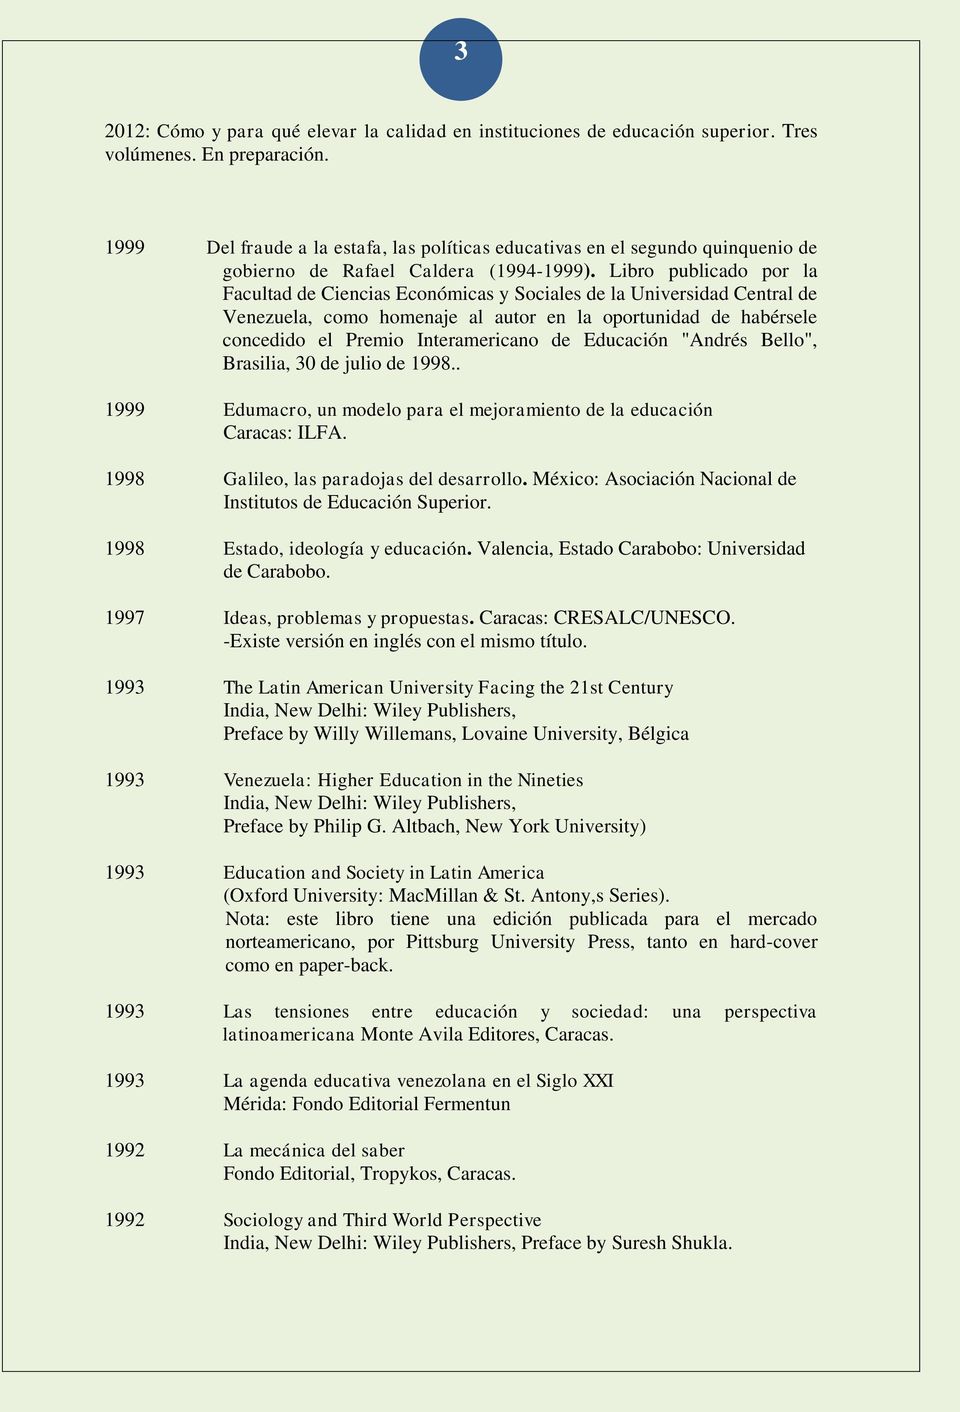 Libro publicado por la Facultad de Ciencias Económicas y Sociales de la Universidad Central de Venezuela, como homenaje al autor en la oportunidad de habérsele concedido el Premio Interamericano de